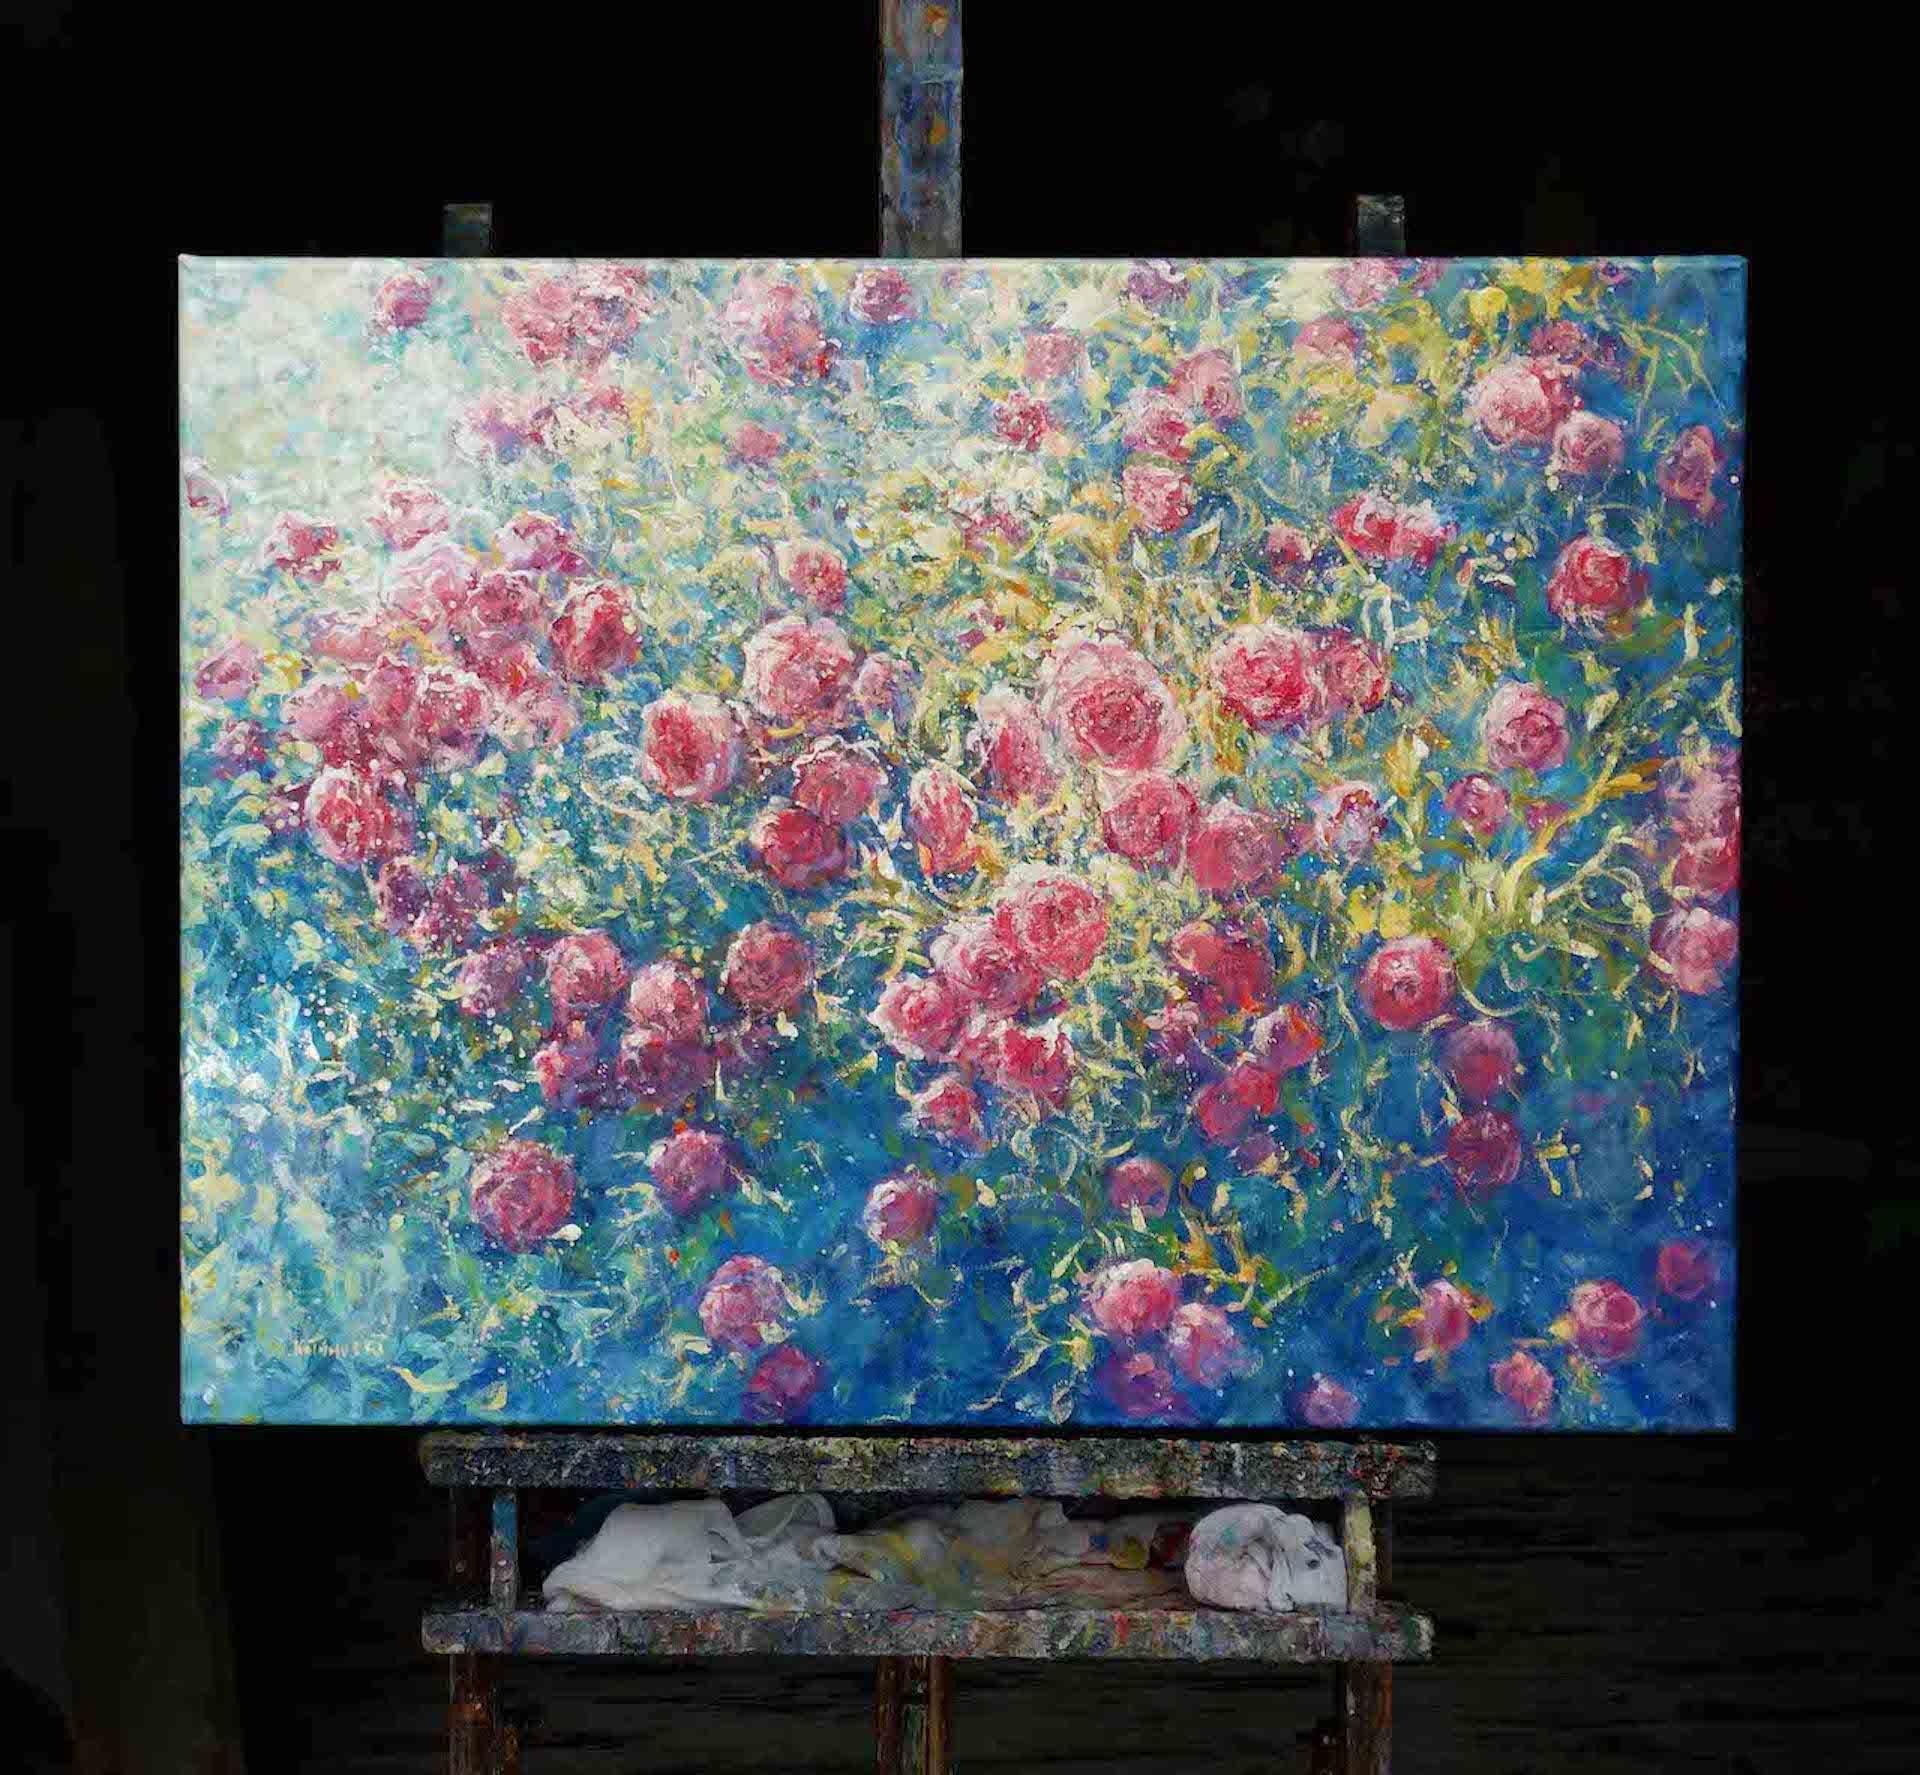 Abundance of Roses, Original-Landschaftsgemälde  Impressionistisches Gemälde (Impressionismus), Painting, von Mariusz Kaldowski